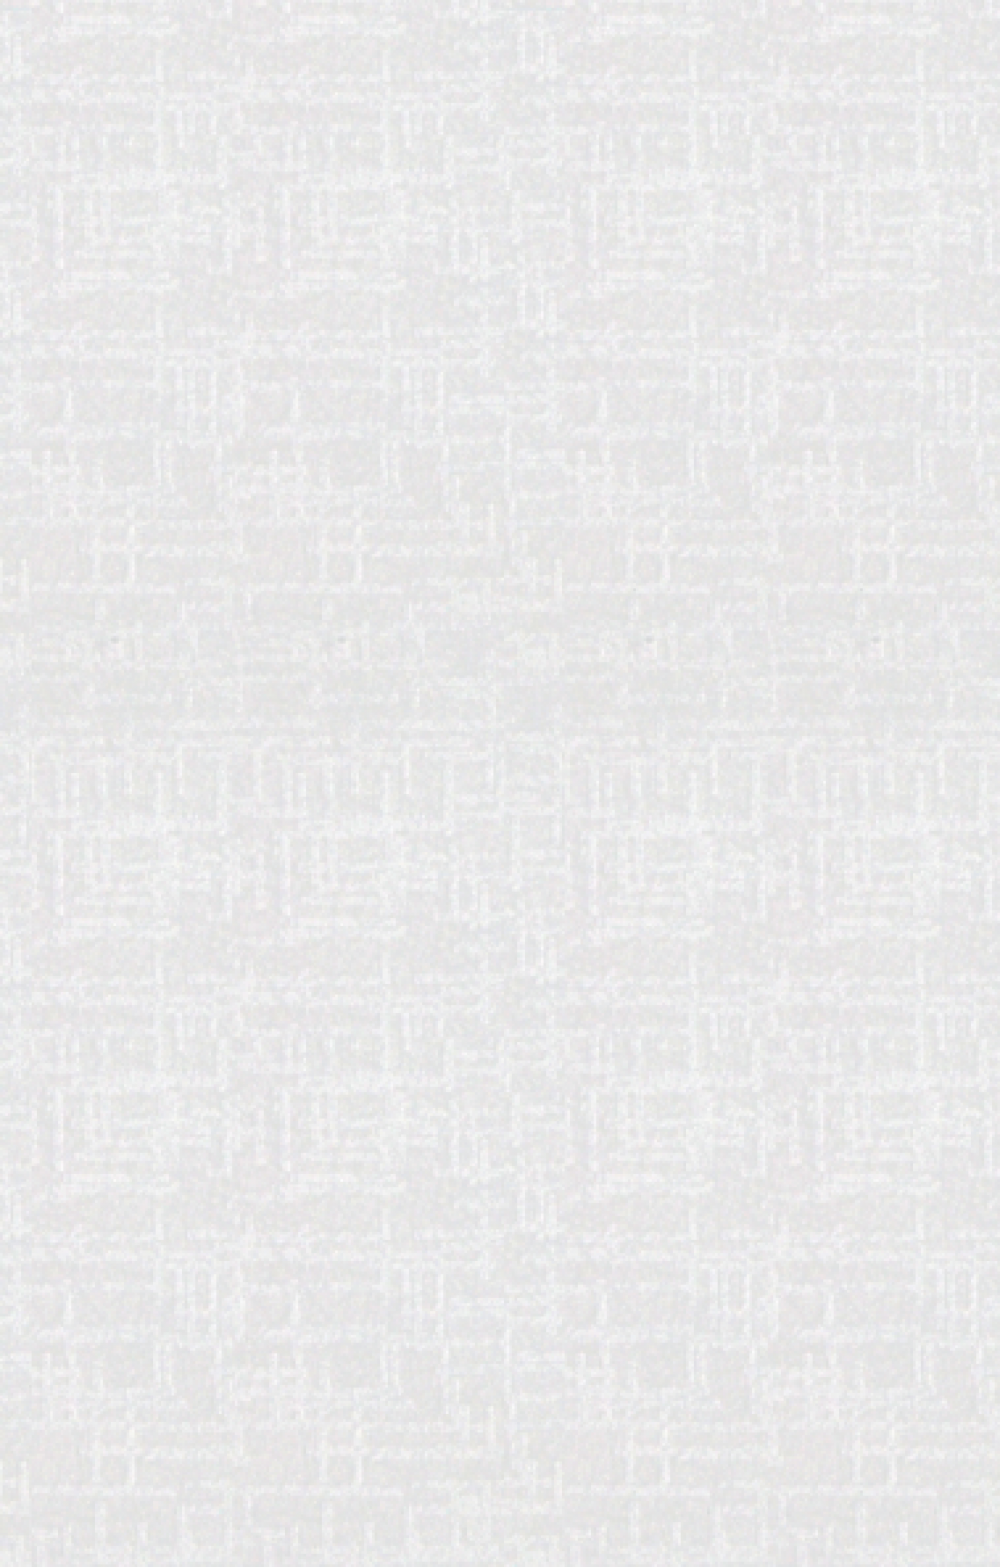  Gresie interior Atenas, alba, mata 25 x 40 cm, 1.5mp/cutie